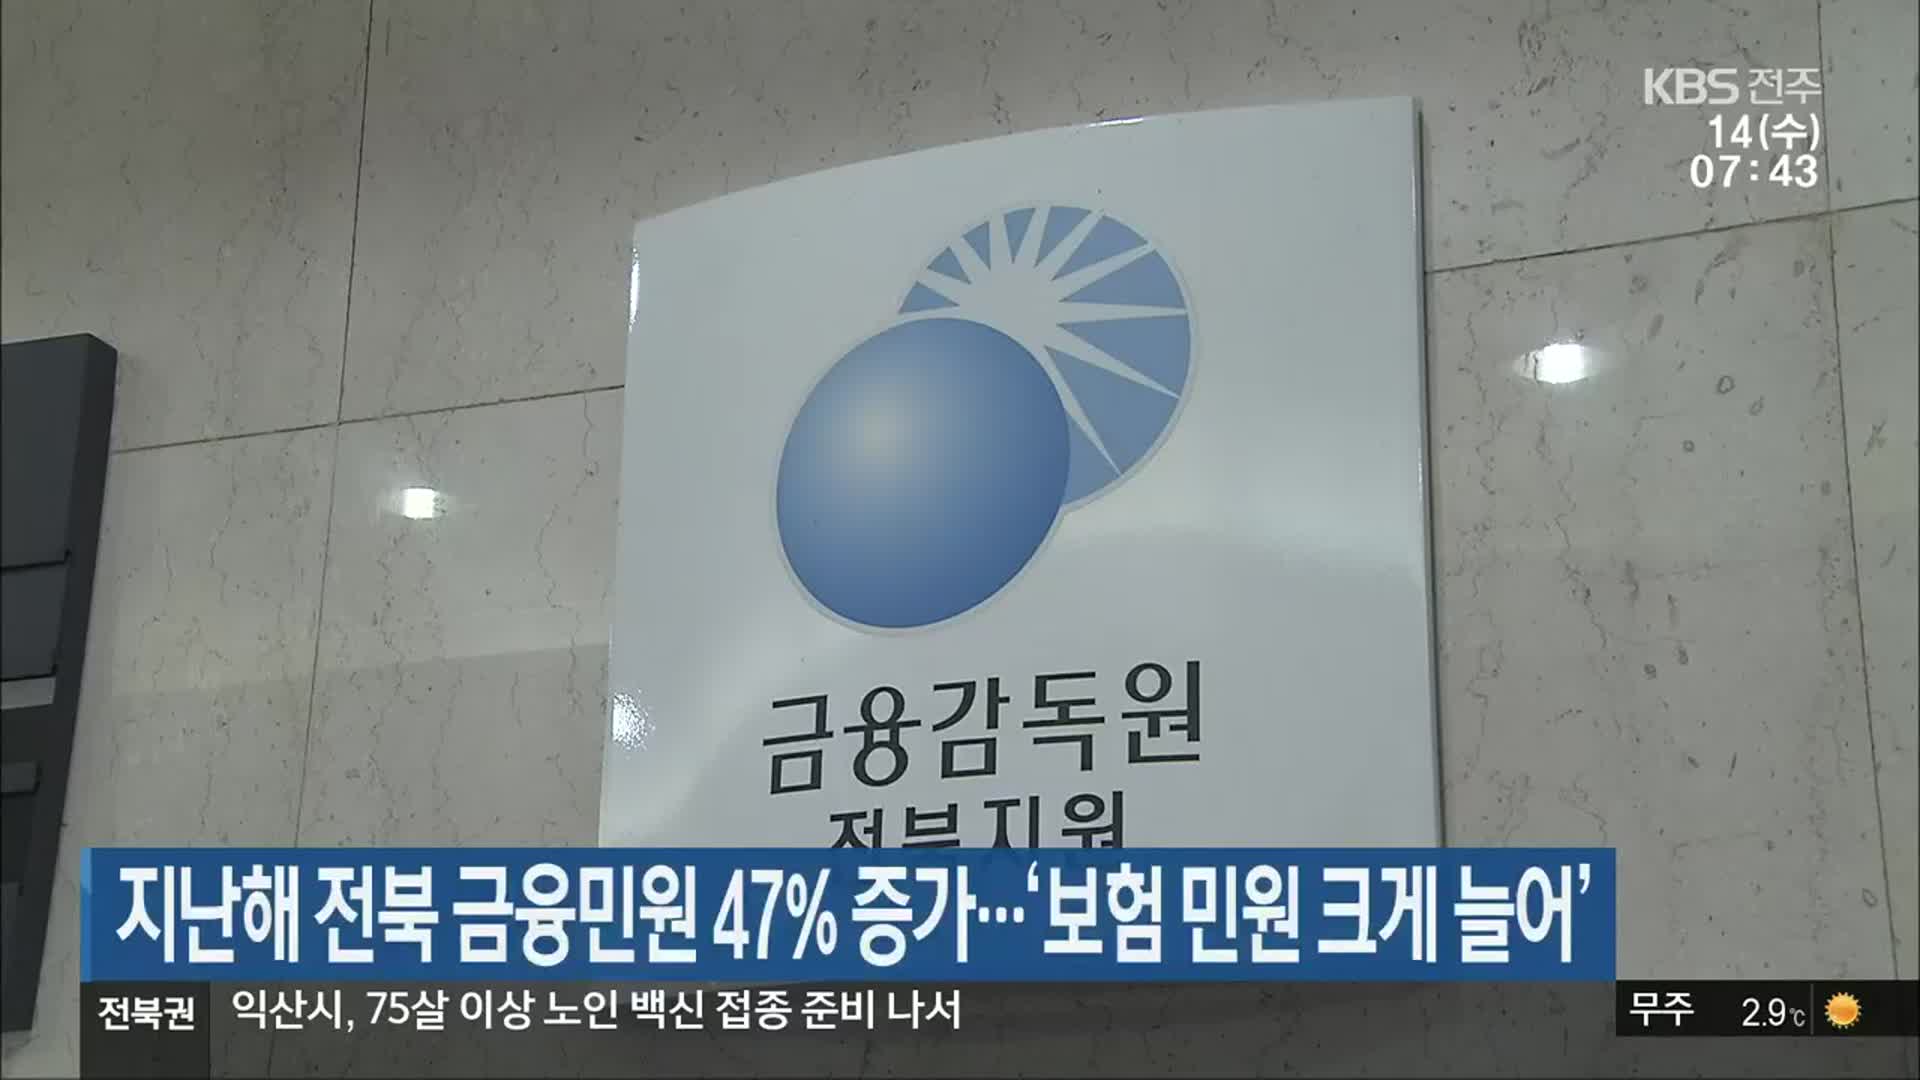 지난해 전북 금융민원 47% 증가…‘보험 민원 크게 늘어’